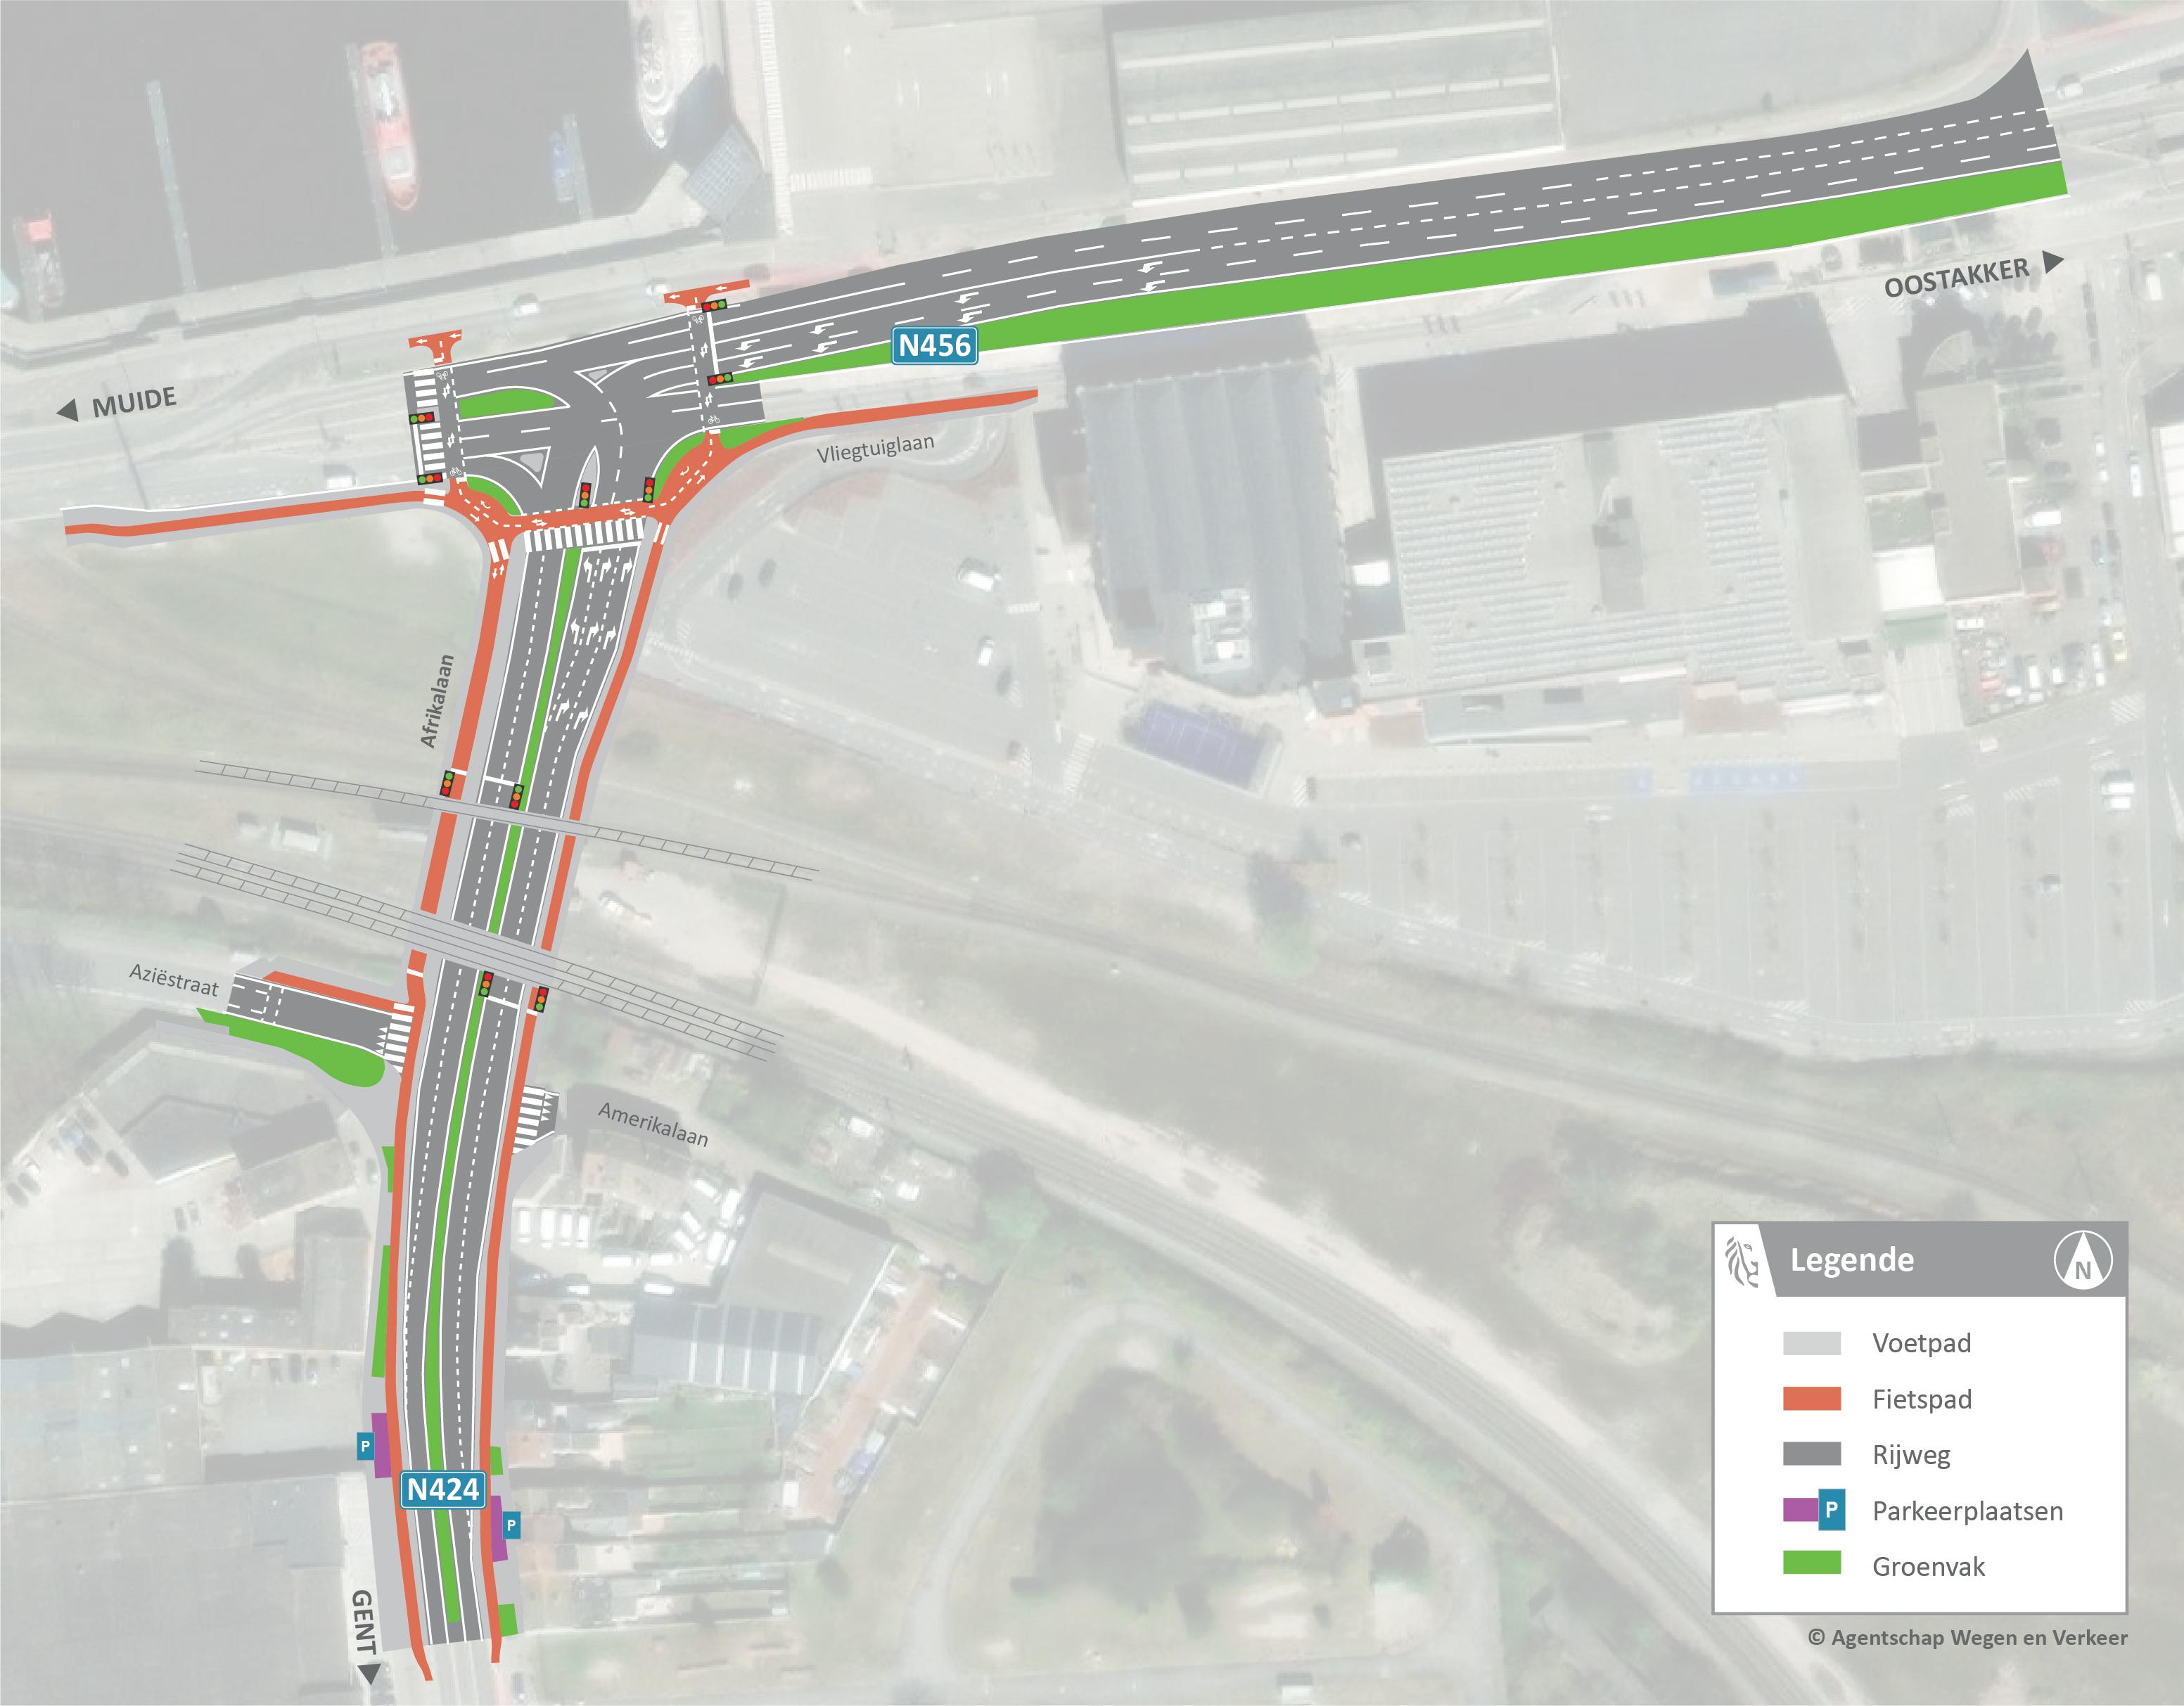 Dit ontwerpplan toont wat er precies verandert op het kruispunt van de Afrikalaan met de Vliegtuiglaan (N424) in Gent.